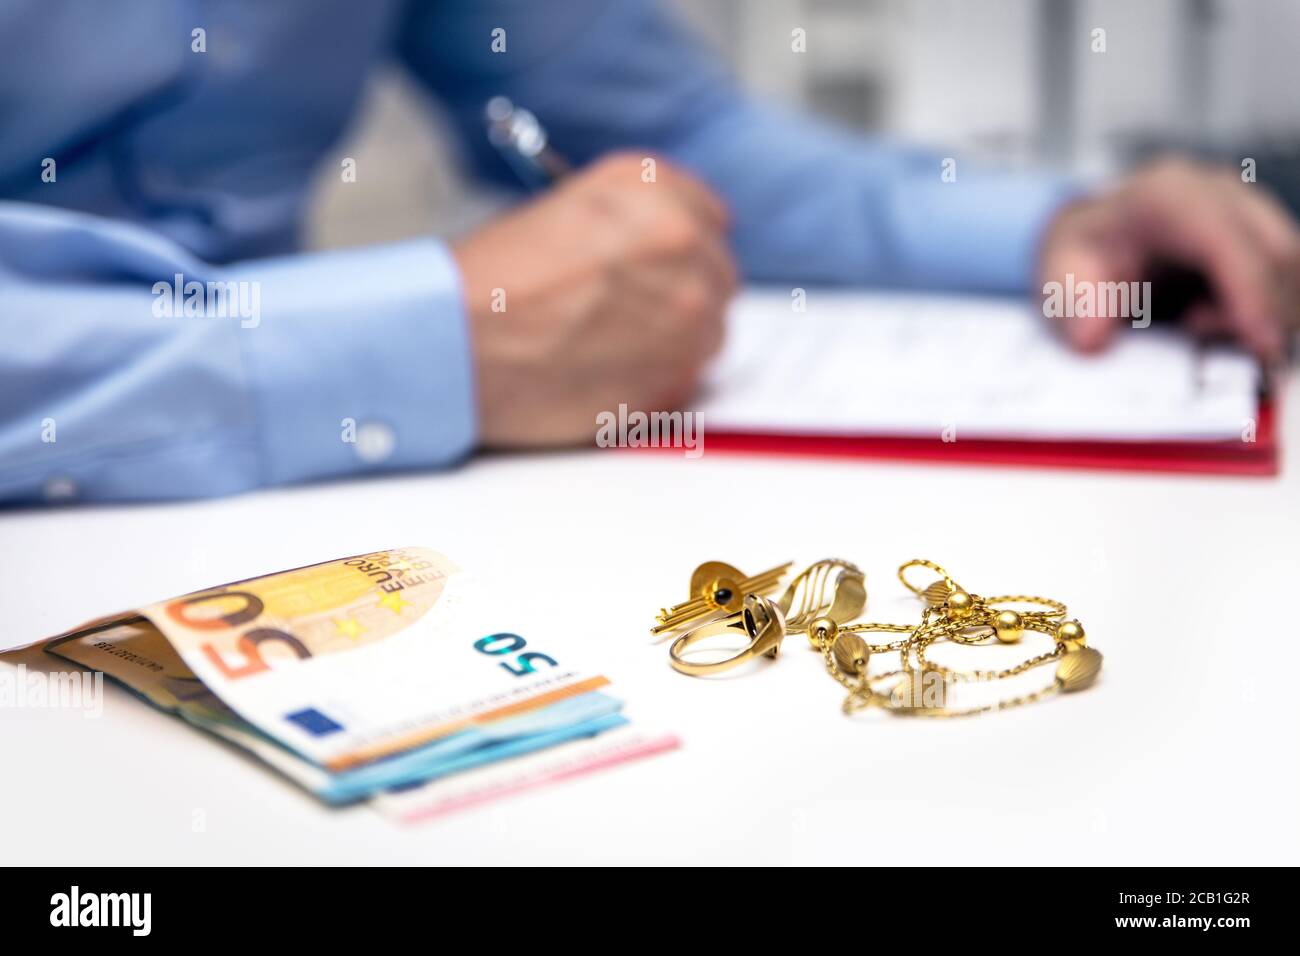 Empresario en la espalda, billetes en euros y joyería de oro en el frente, la eliminación y la venta Foto de stock